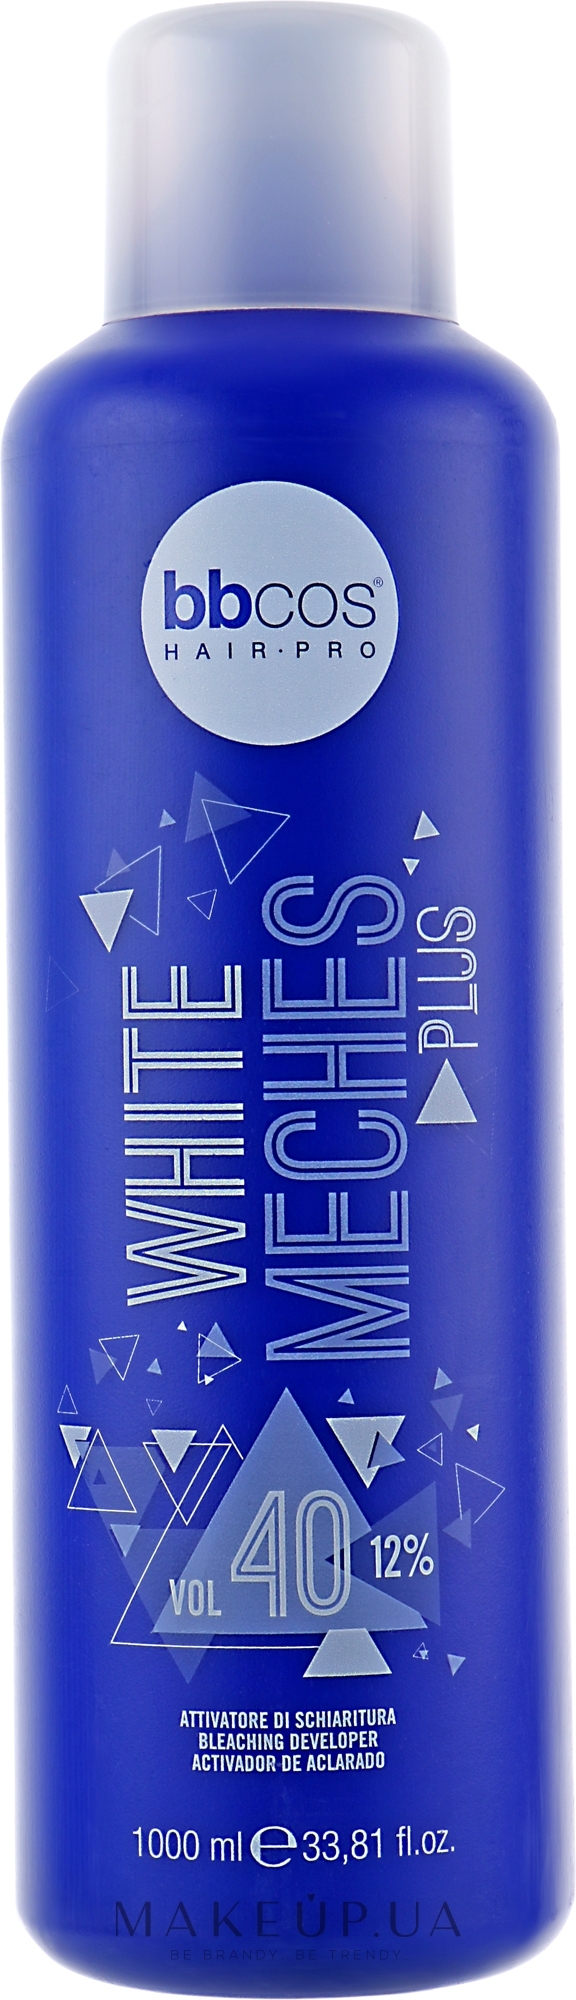 Окислитель для осветления волос 12% - BBcos White Meches Plus 40 Vol — фото 1000ml